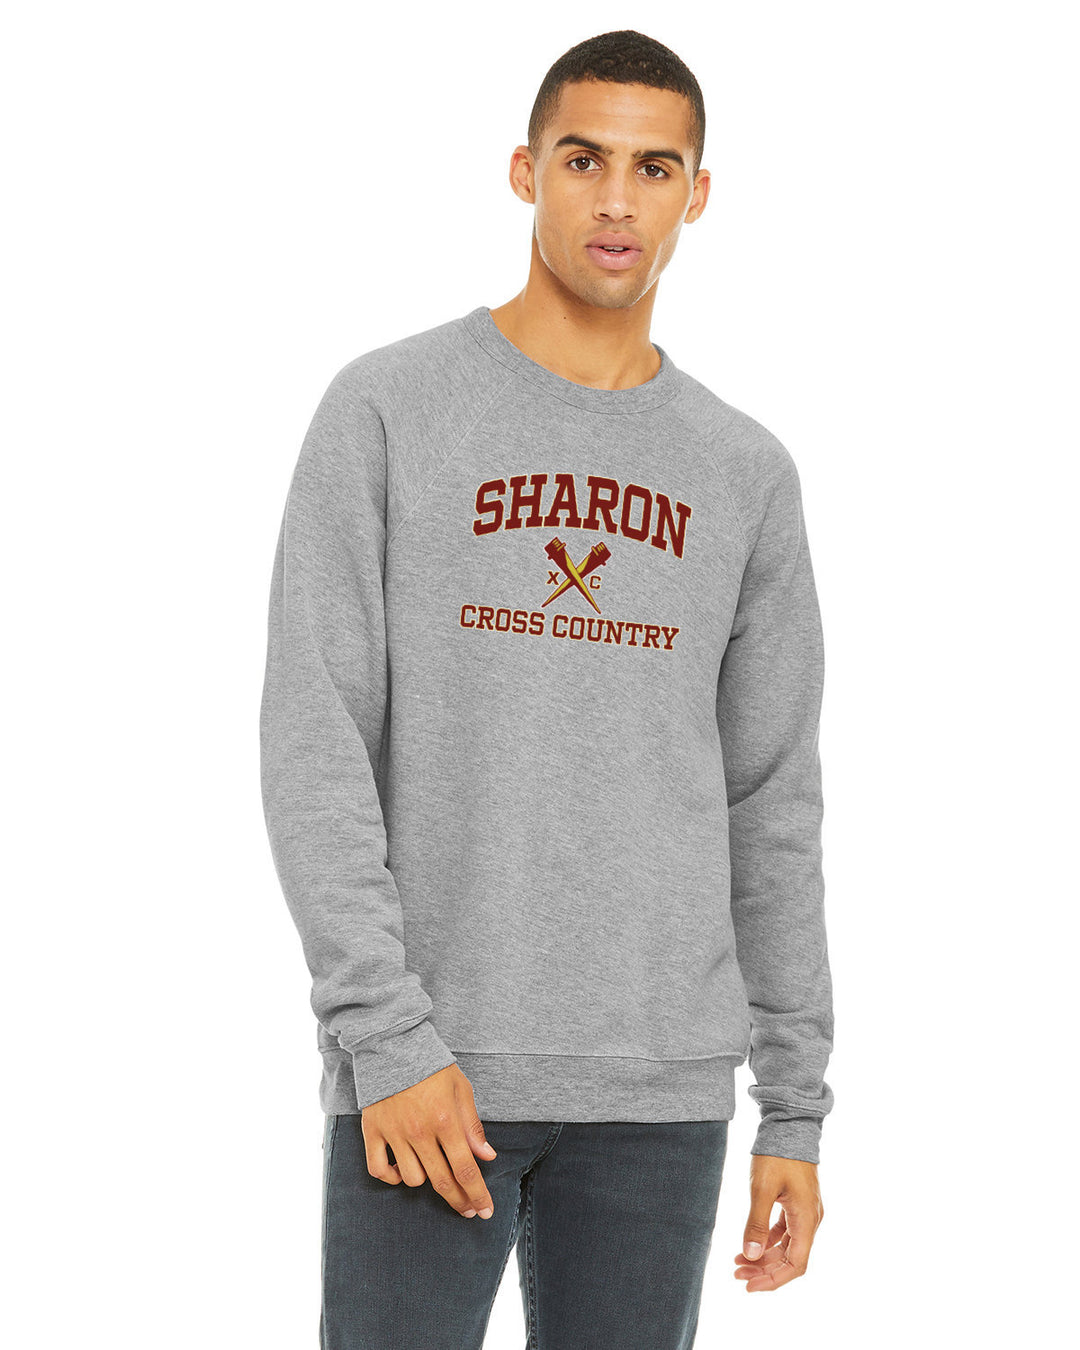 Sharon Cross Country Fleece Crewneck Sweatshirt (3901)